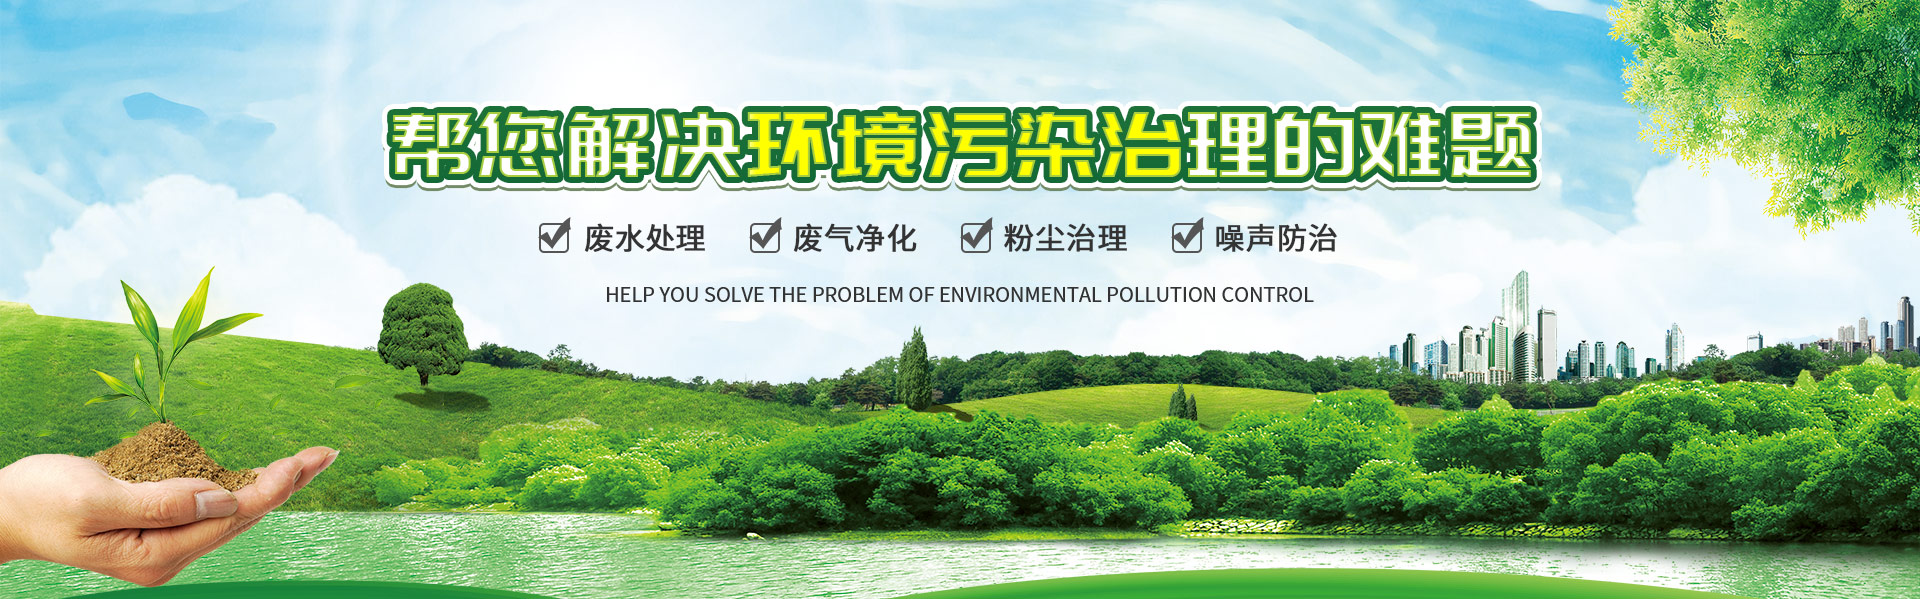 重慶工業廢水治理